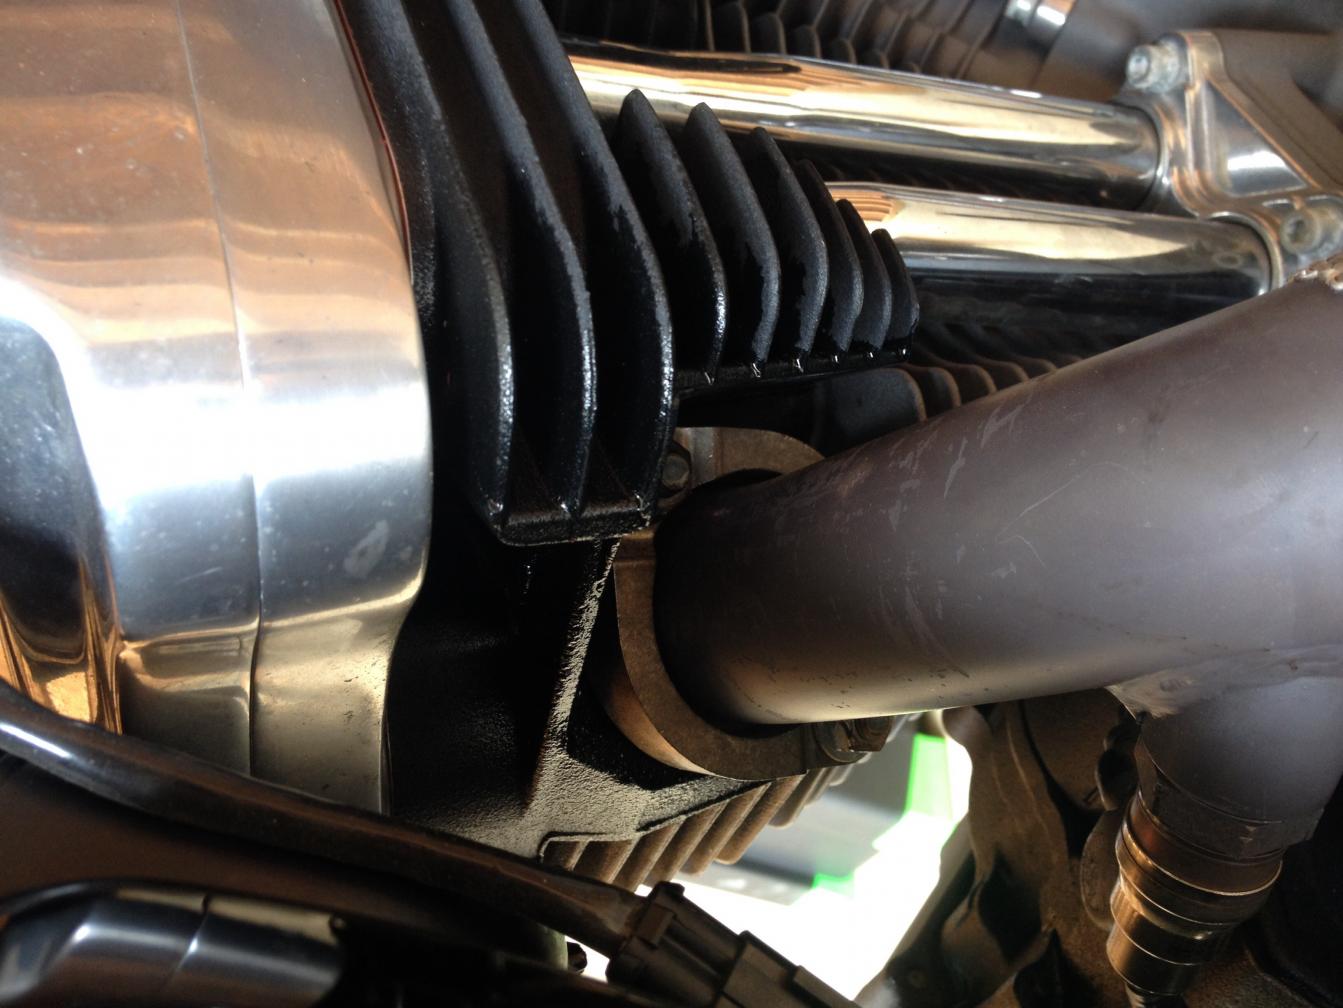 Oil leak. Rear rocker/exhaust area - Harley Davidson Forums 2006 6.0 Powerstroke Oil Leak Rear Of Engine